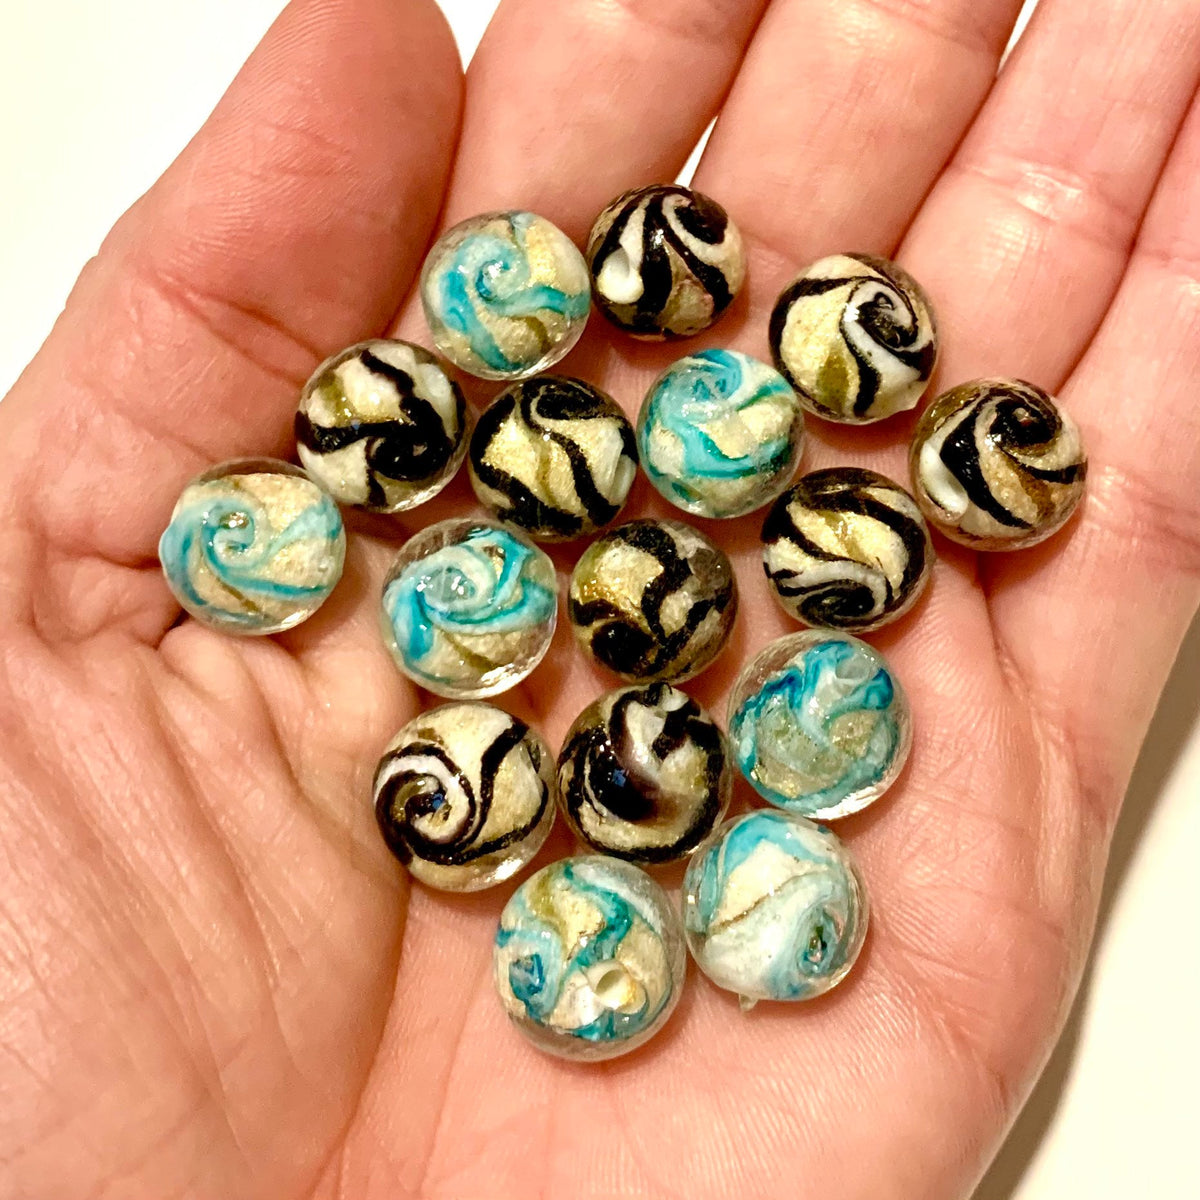 Lampwork Glass Beads - Swirls w/Gold Powder Glass Beads – Findings